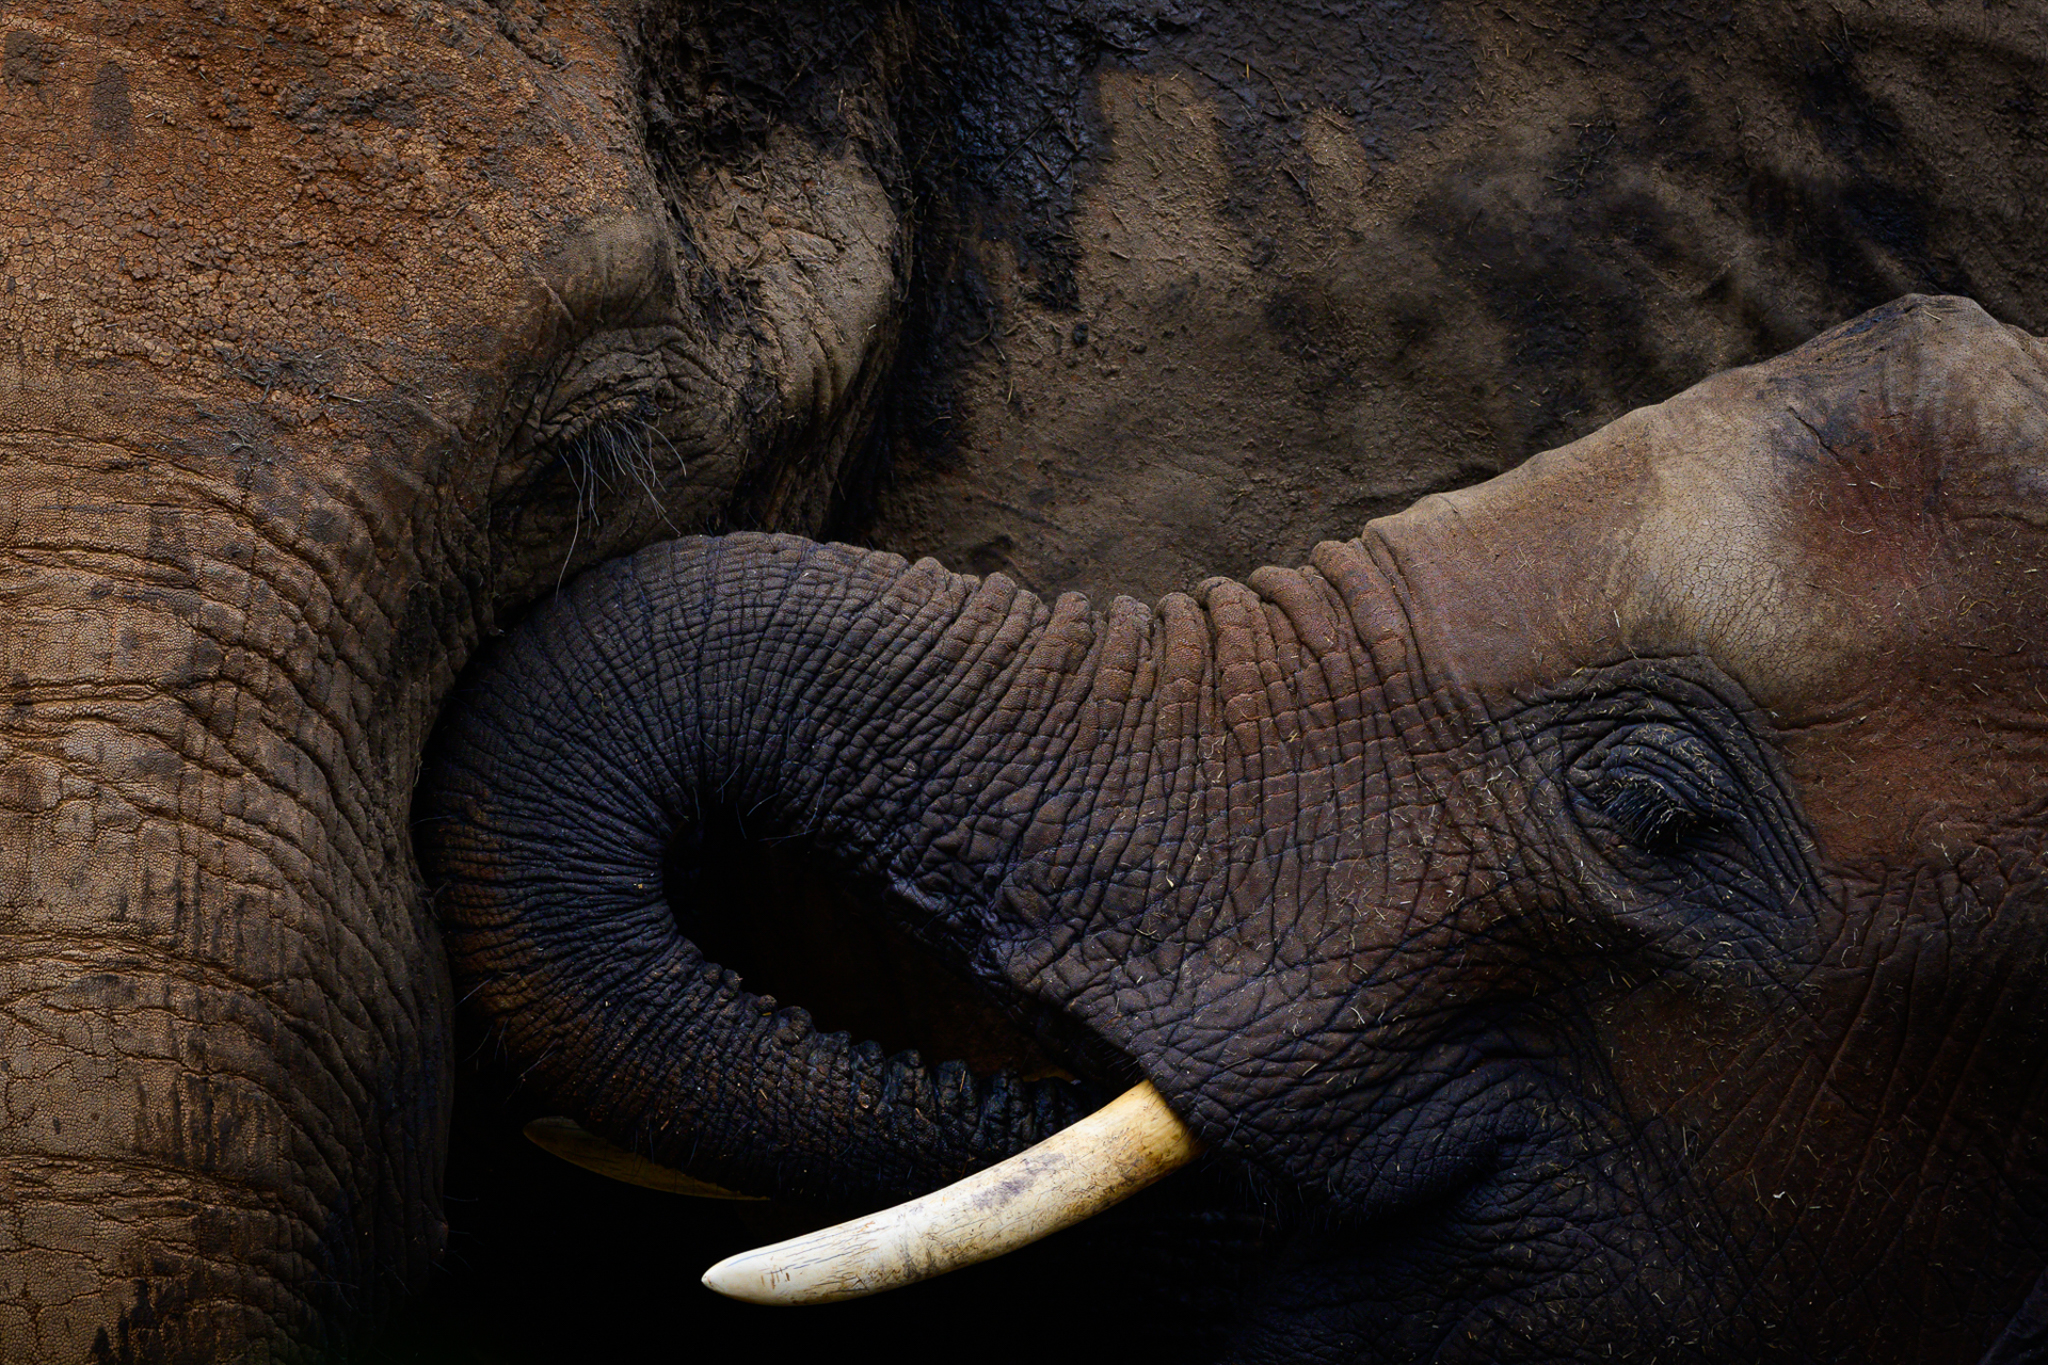 Африканский слон, Национальный парк Восточный Цаво, Кения, 2019 год (фото Кристи Одом).